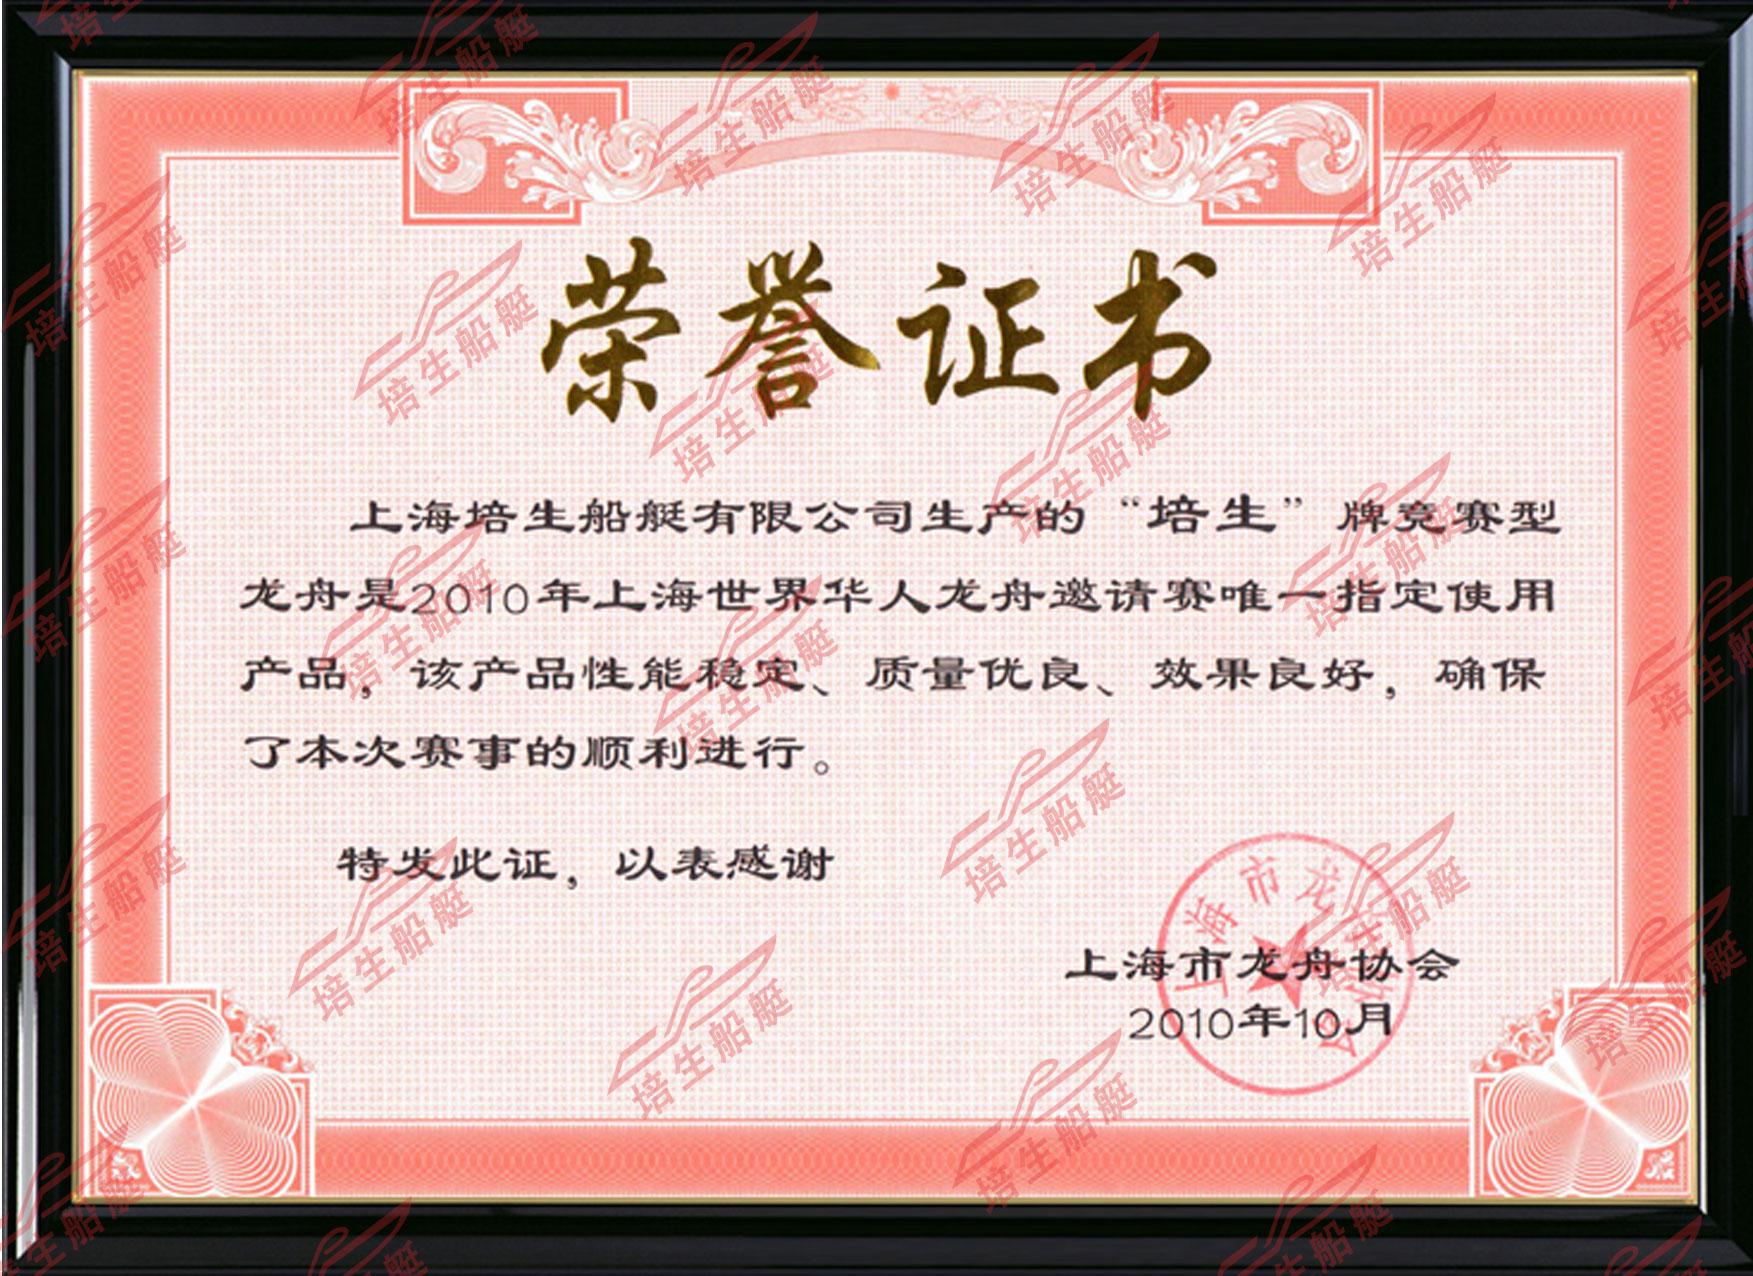 2010年上海世界华人龙舟邀请赛唯一指定使用产品